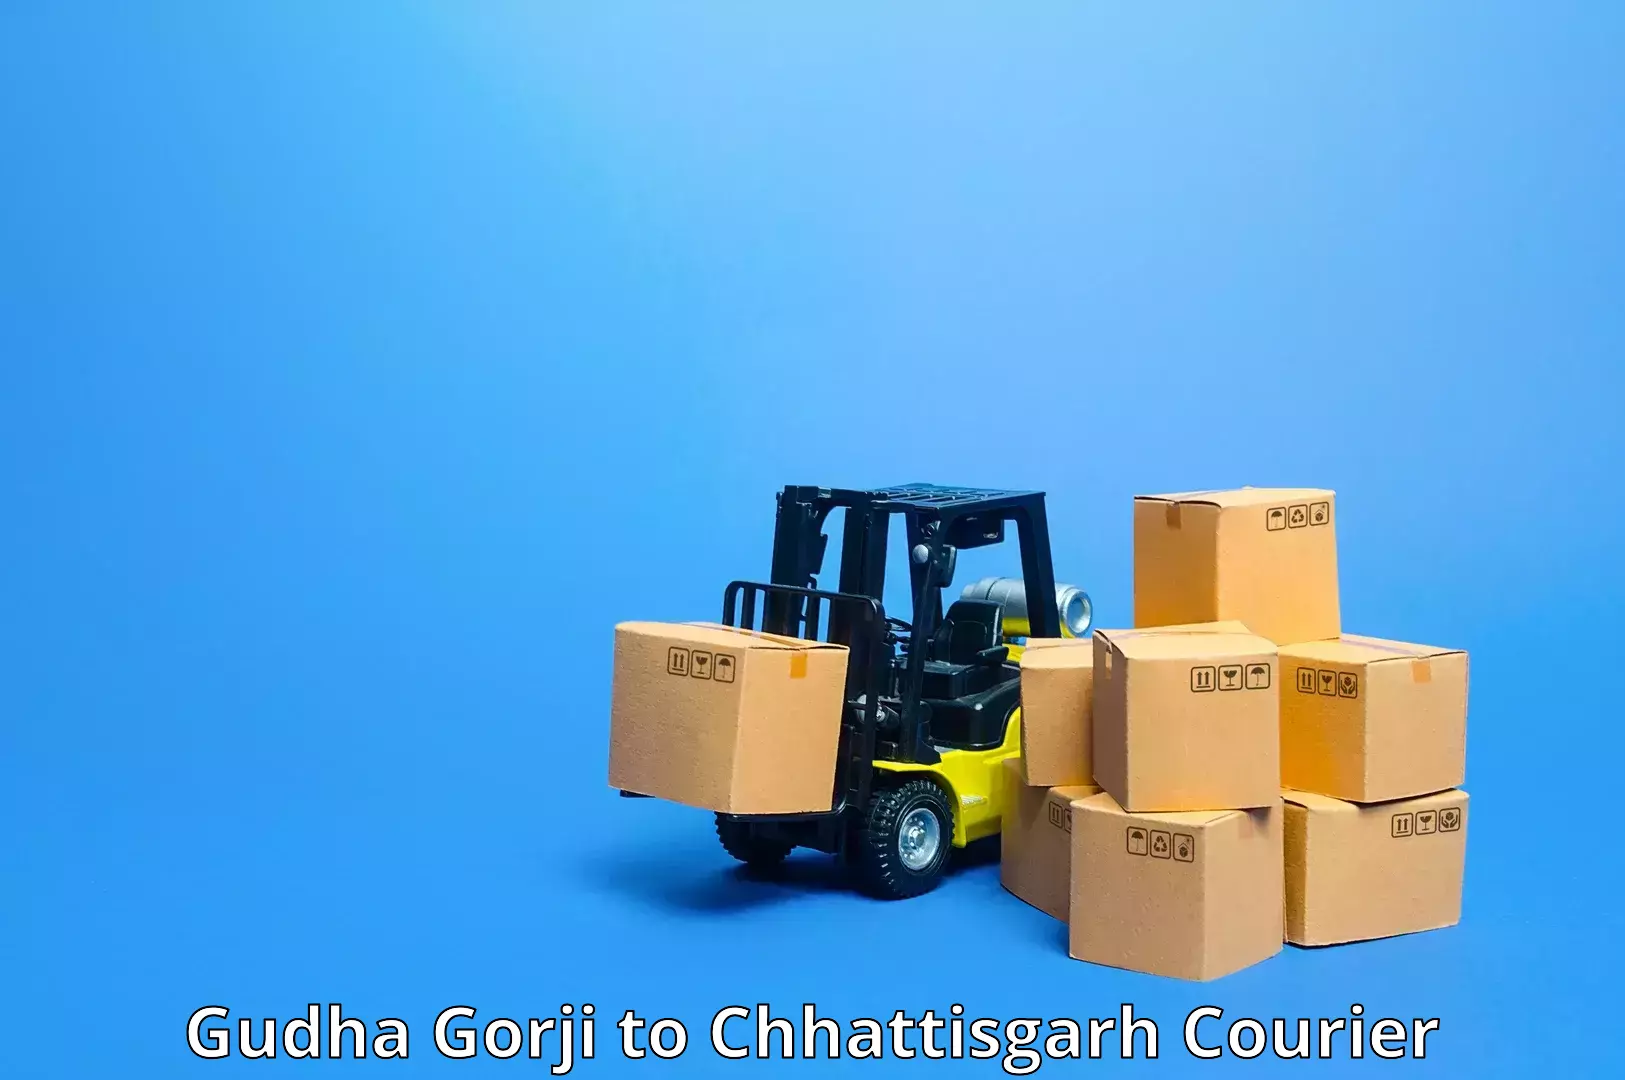 Courier service efficiency Gudha Gorji to Sakti